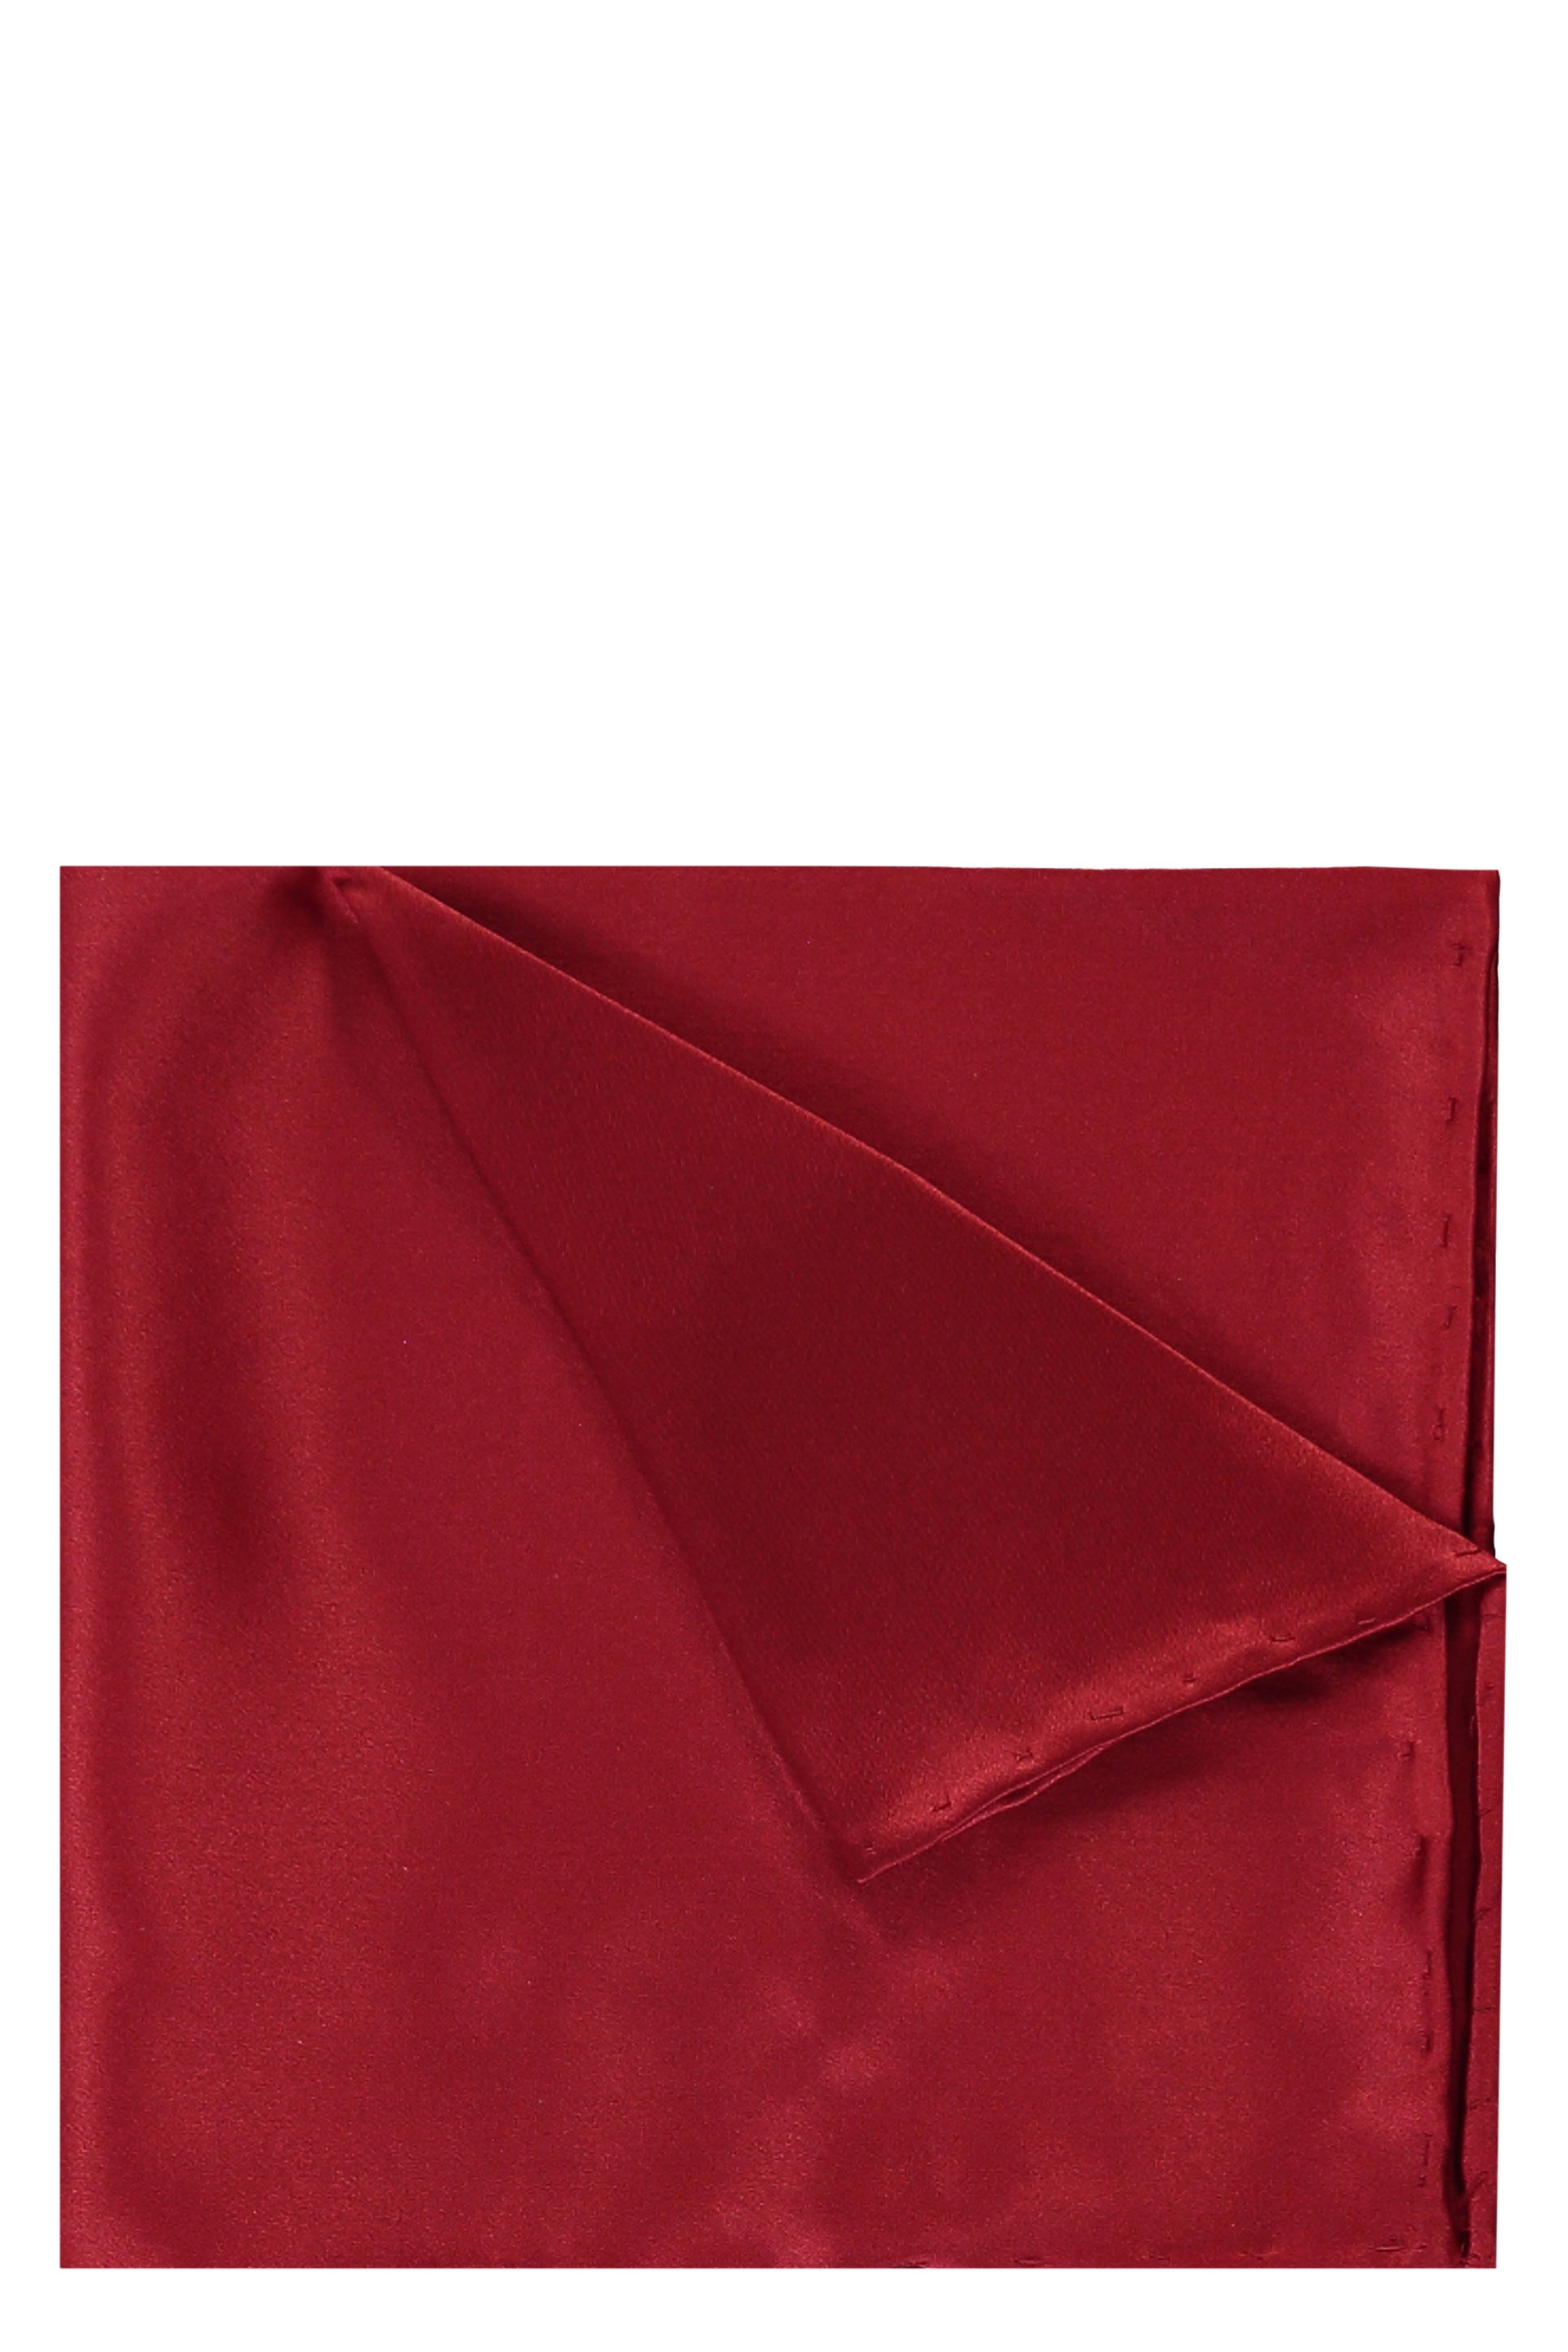 BRIONI-OUTLET-SALE-Hemmed-handkerchief-Accessoires-TU-ARCHIVE-COLLECTION_34c604e7-a521-4cfc-8975-b13d8c5a9b16.jpg